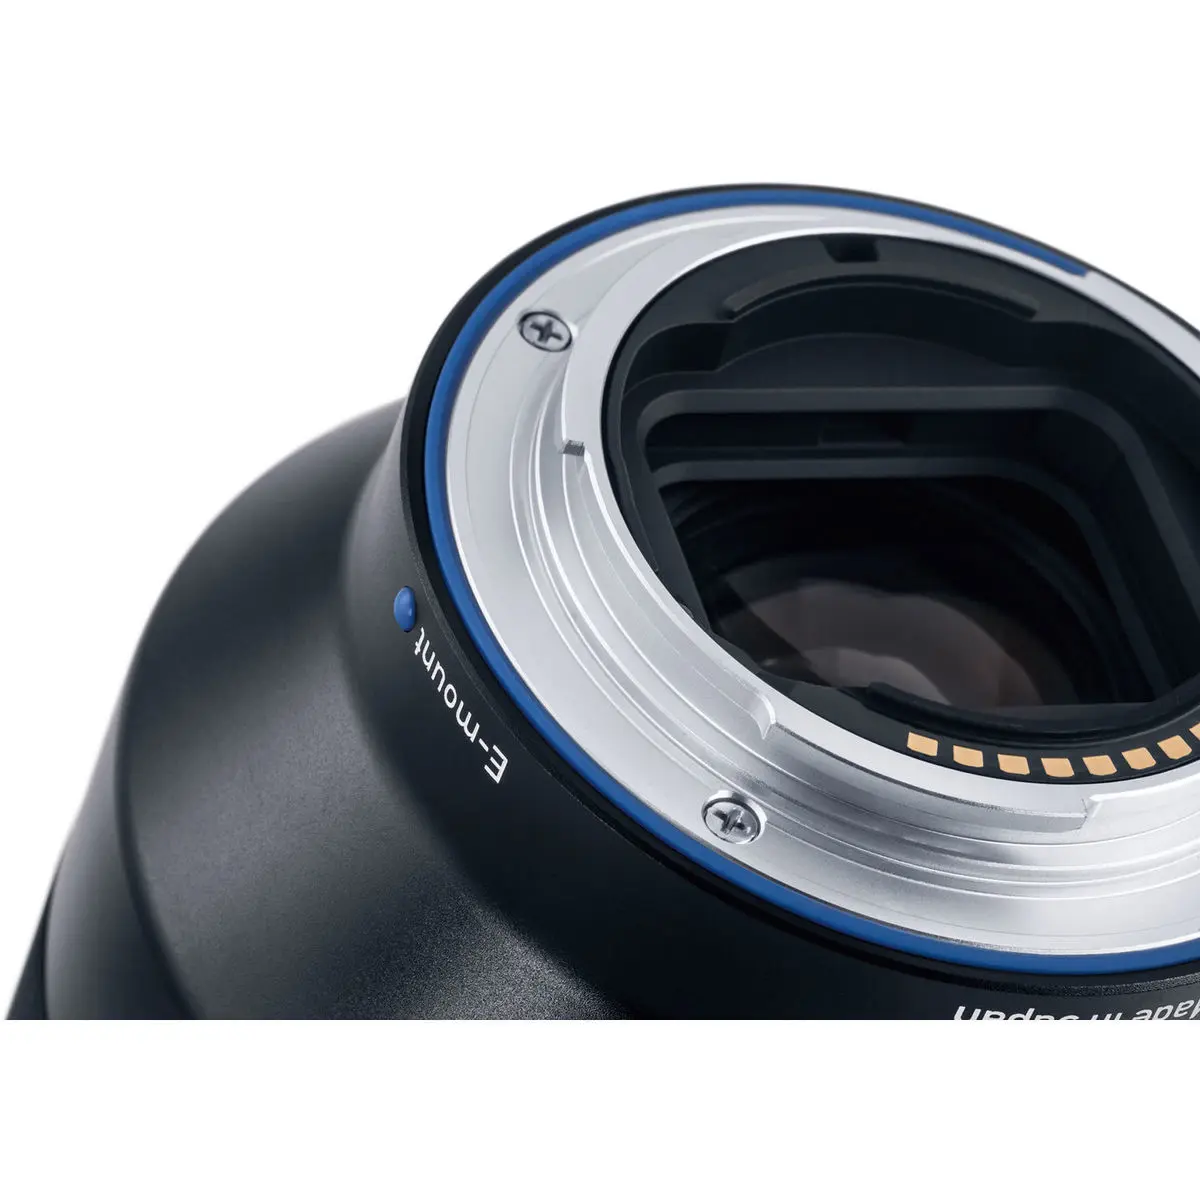 8. Carl Zeiss Batis 135mm F2.8 for Sony E mount Lens